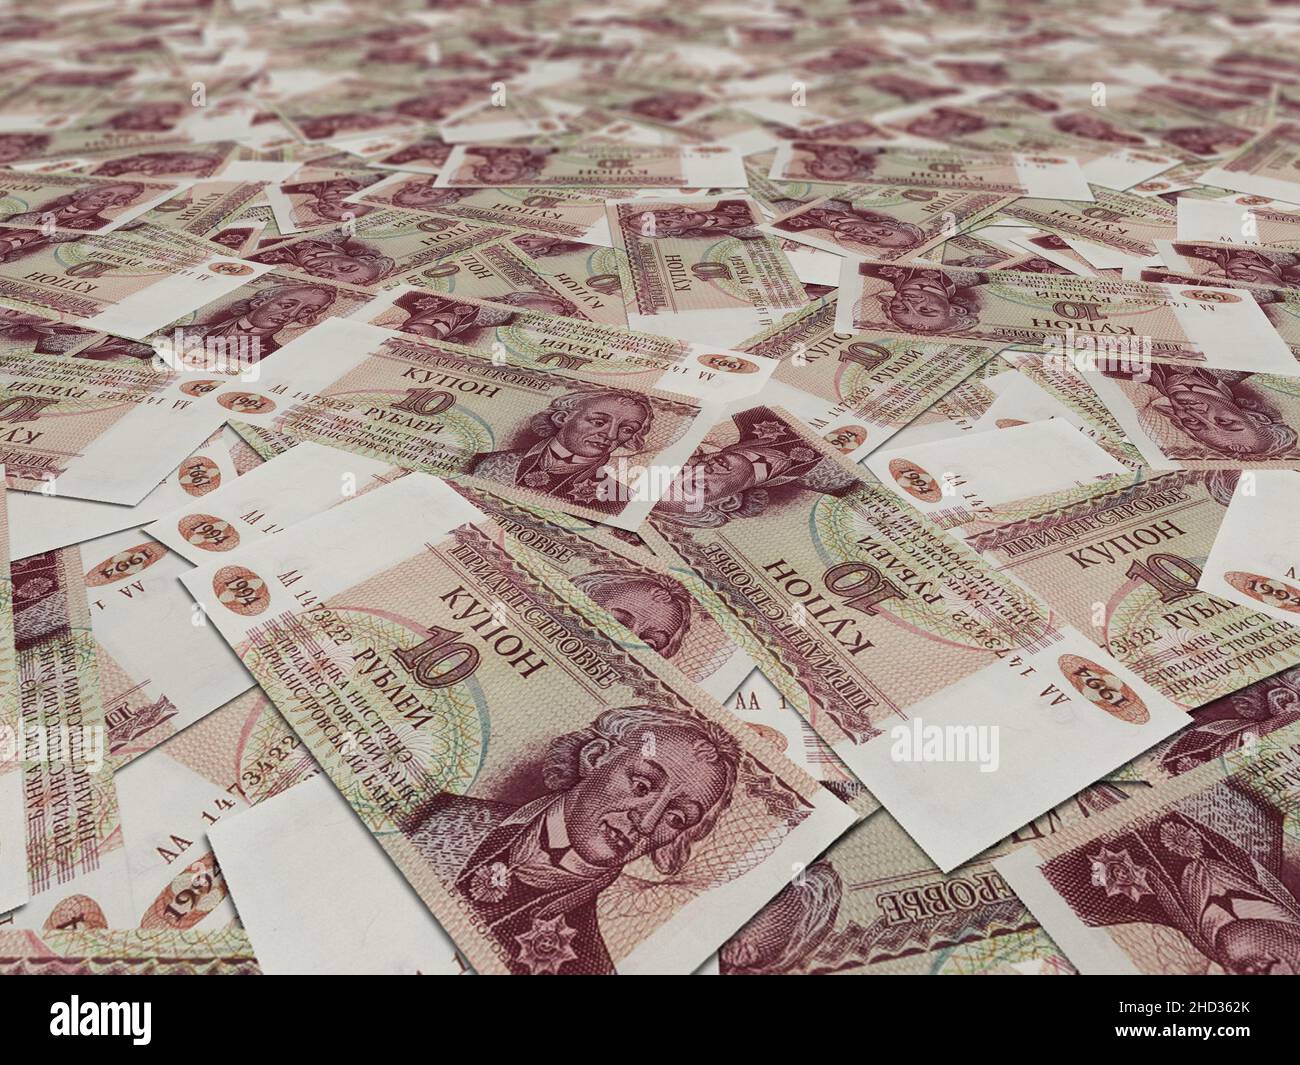 Gros plan sur les billets de 10 roubles de Transnistrie répartis dans un cadre complet Banque D'Images